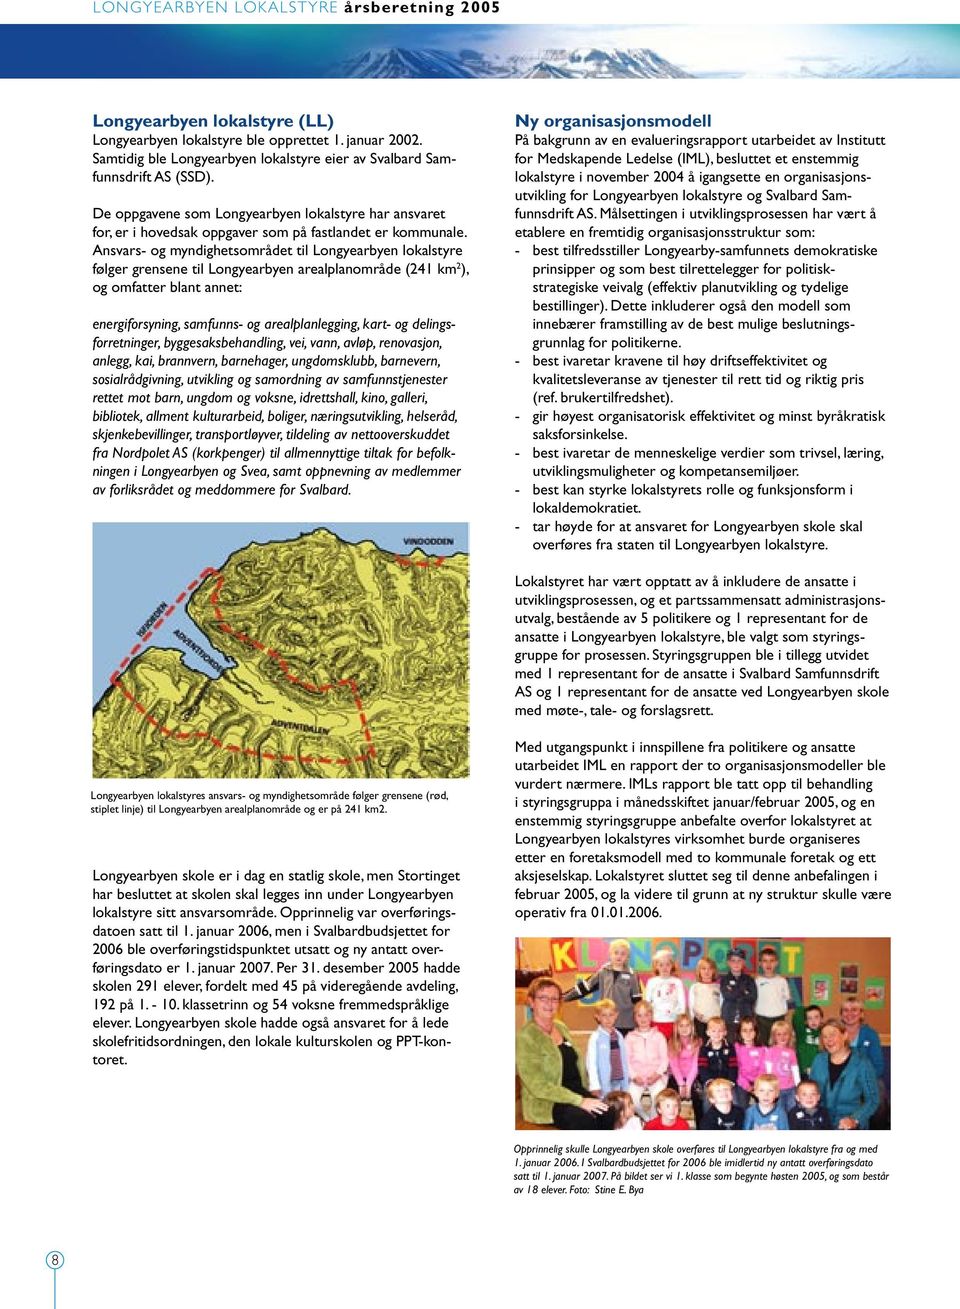 Ansvars- og myndighetsområdet til Longyearbyen lokalstyre følger grensene til Longyearbyen arealplanområde (241 km 2 ), og omfatter blant annet: energiforsyning, samfunns- og arealplanlegging, kart-